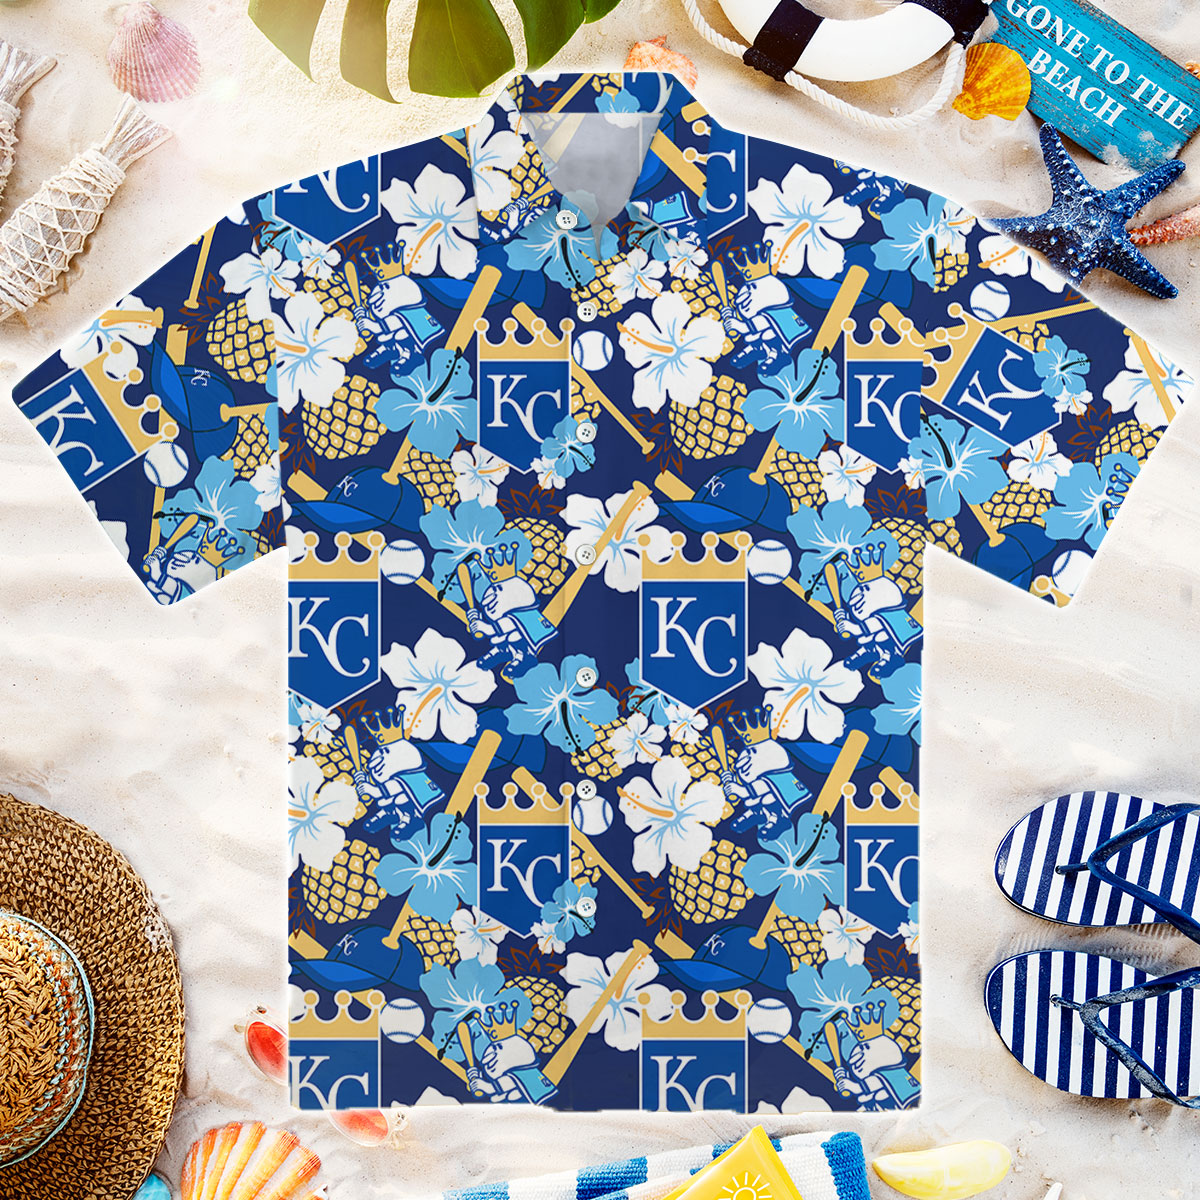 royals hawaiian shirt 2022